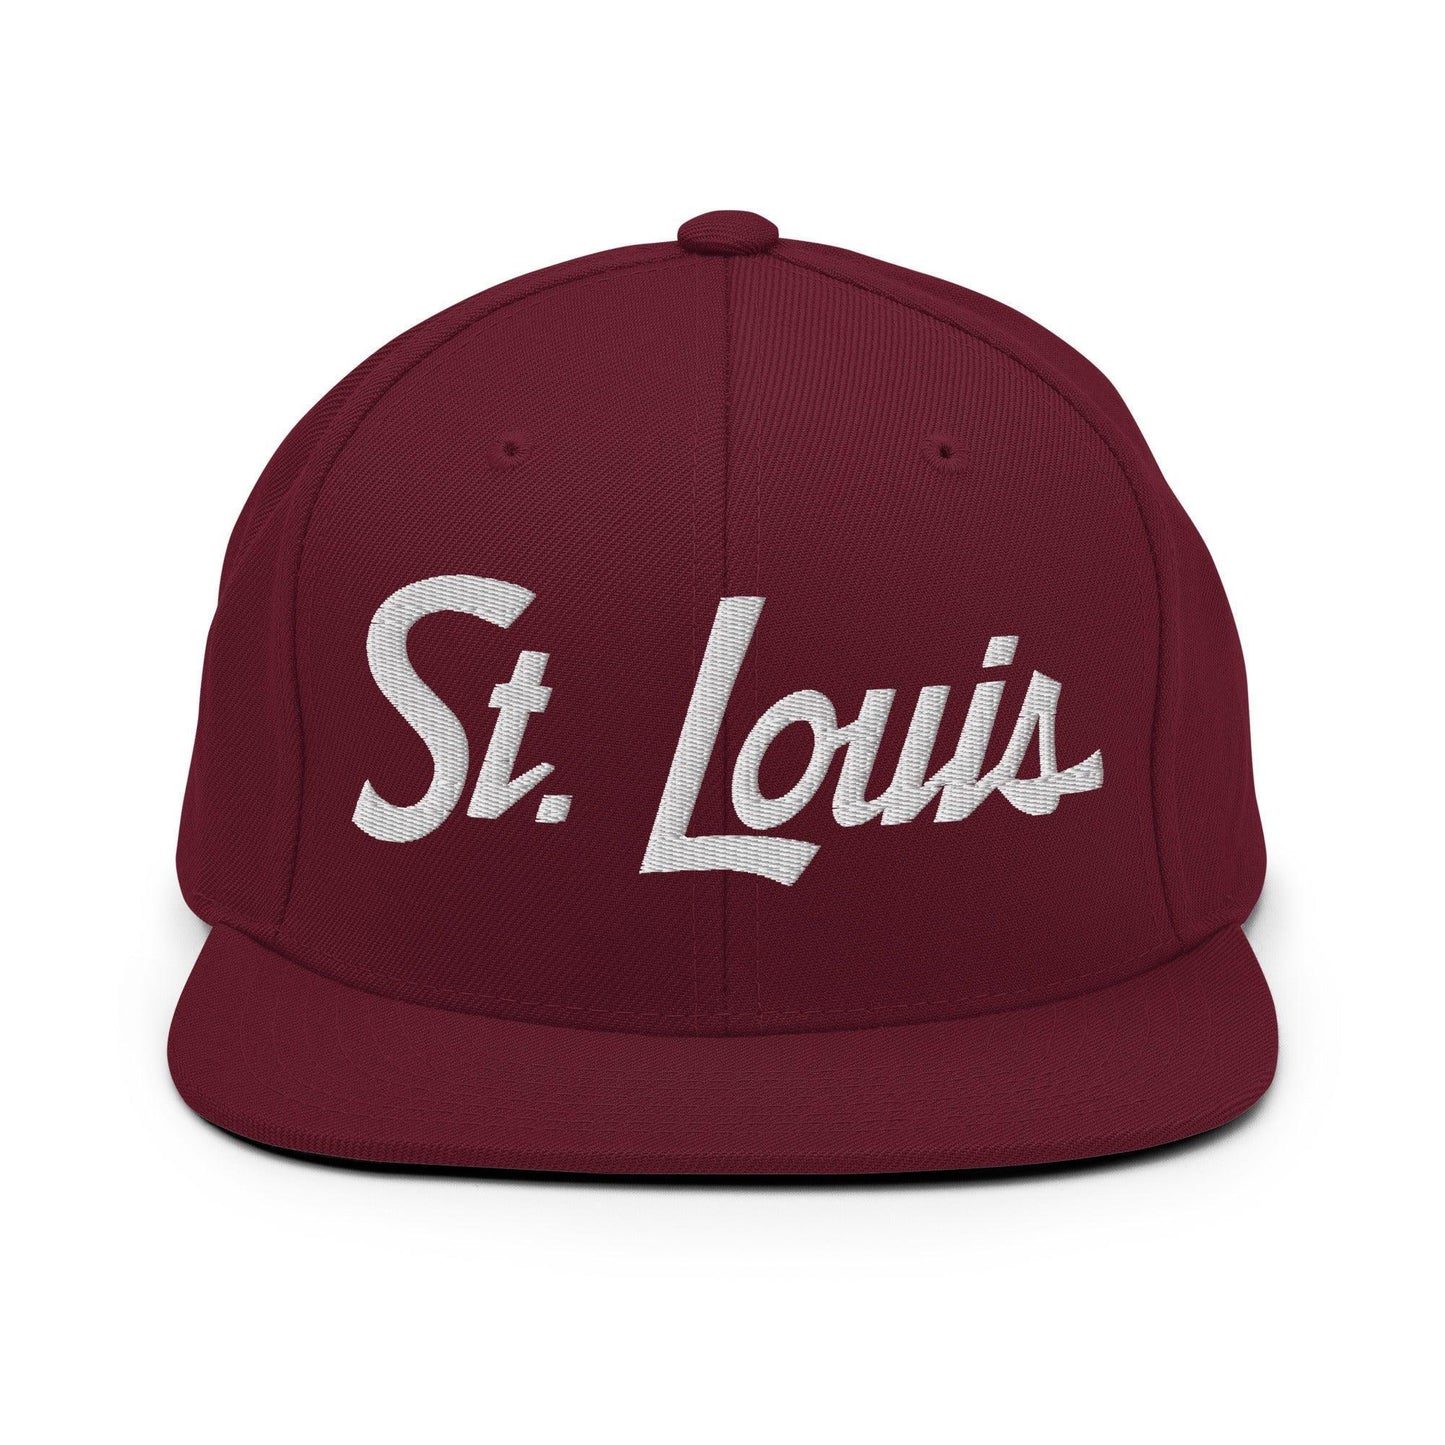 St. Louis Script Snapback Hat Maroon